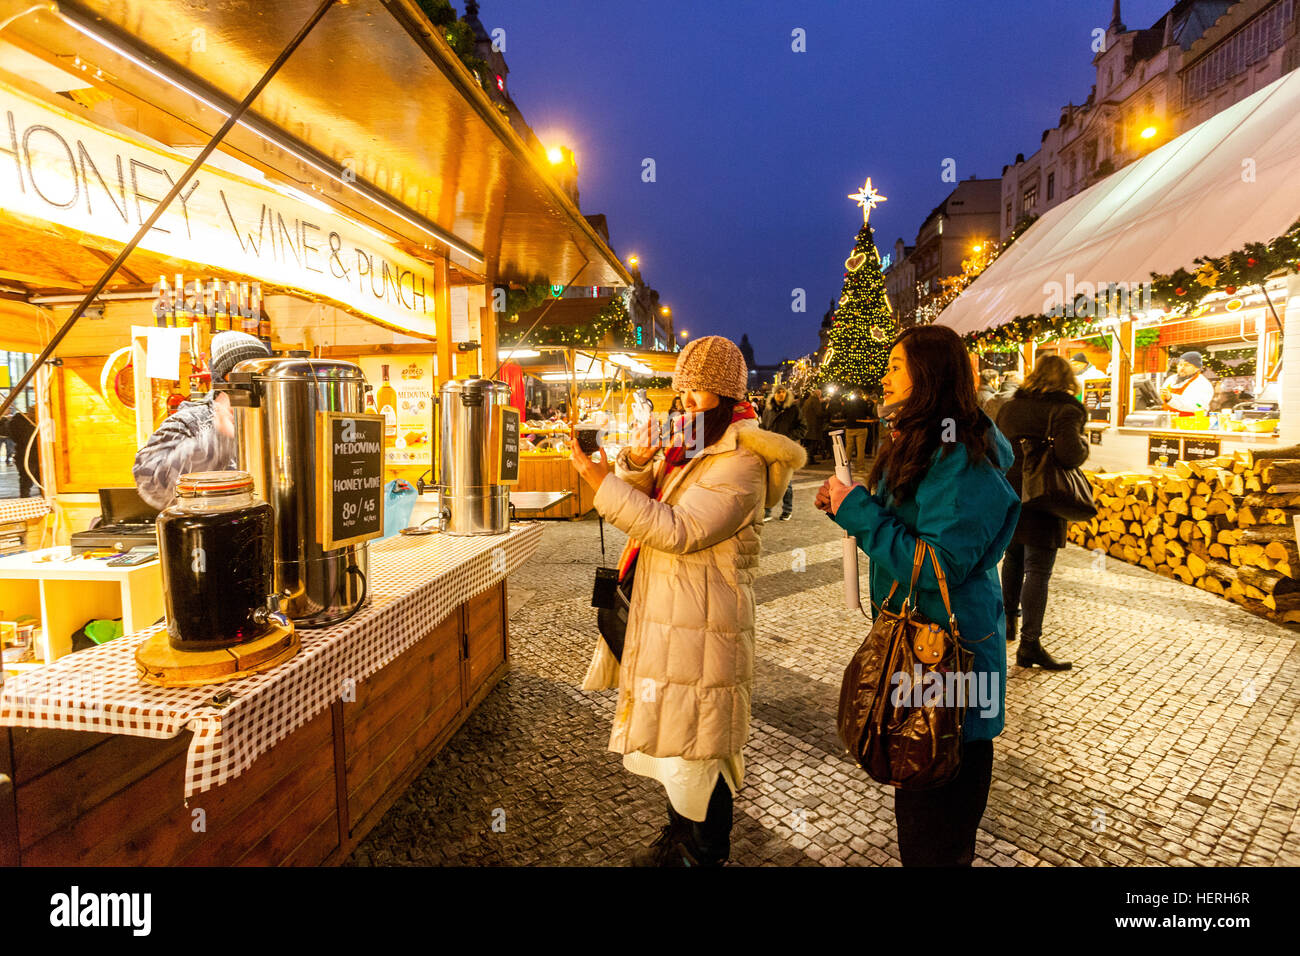 La place Venceslas de Prague, marchés de Noël, vin de miel sur le marché de décrochage, République Tchèque Banque D'Images